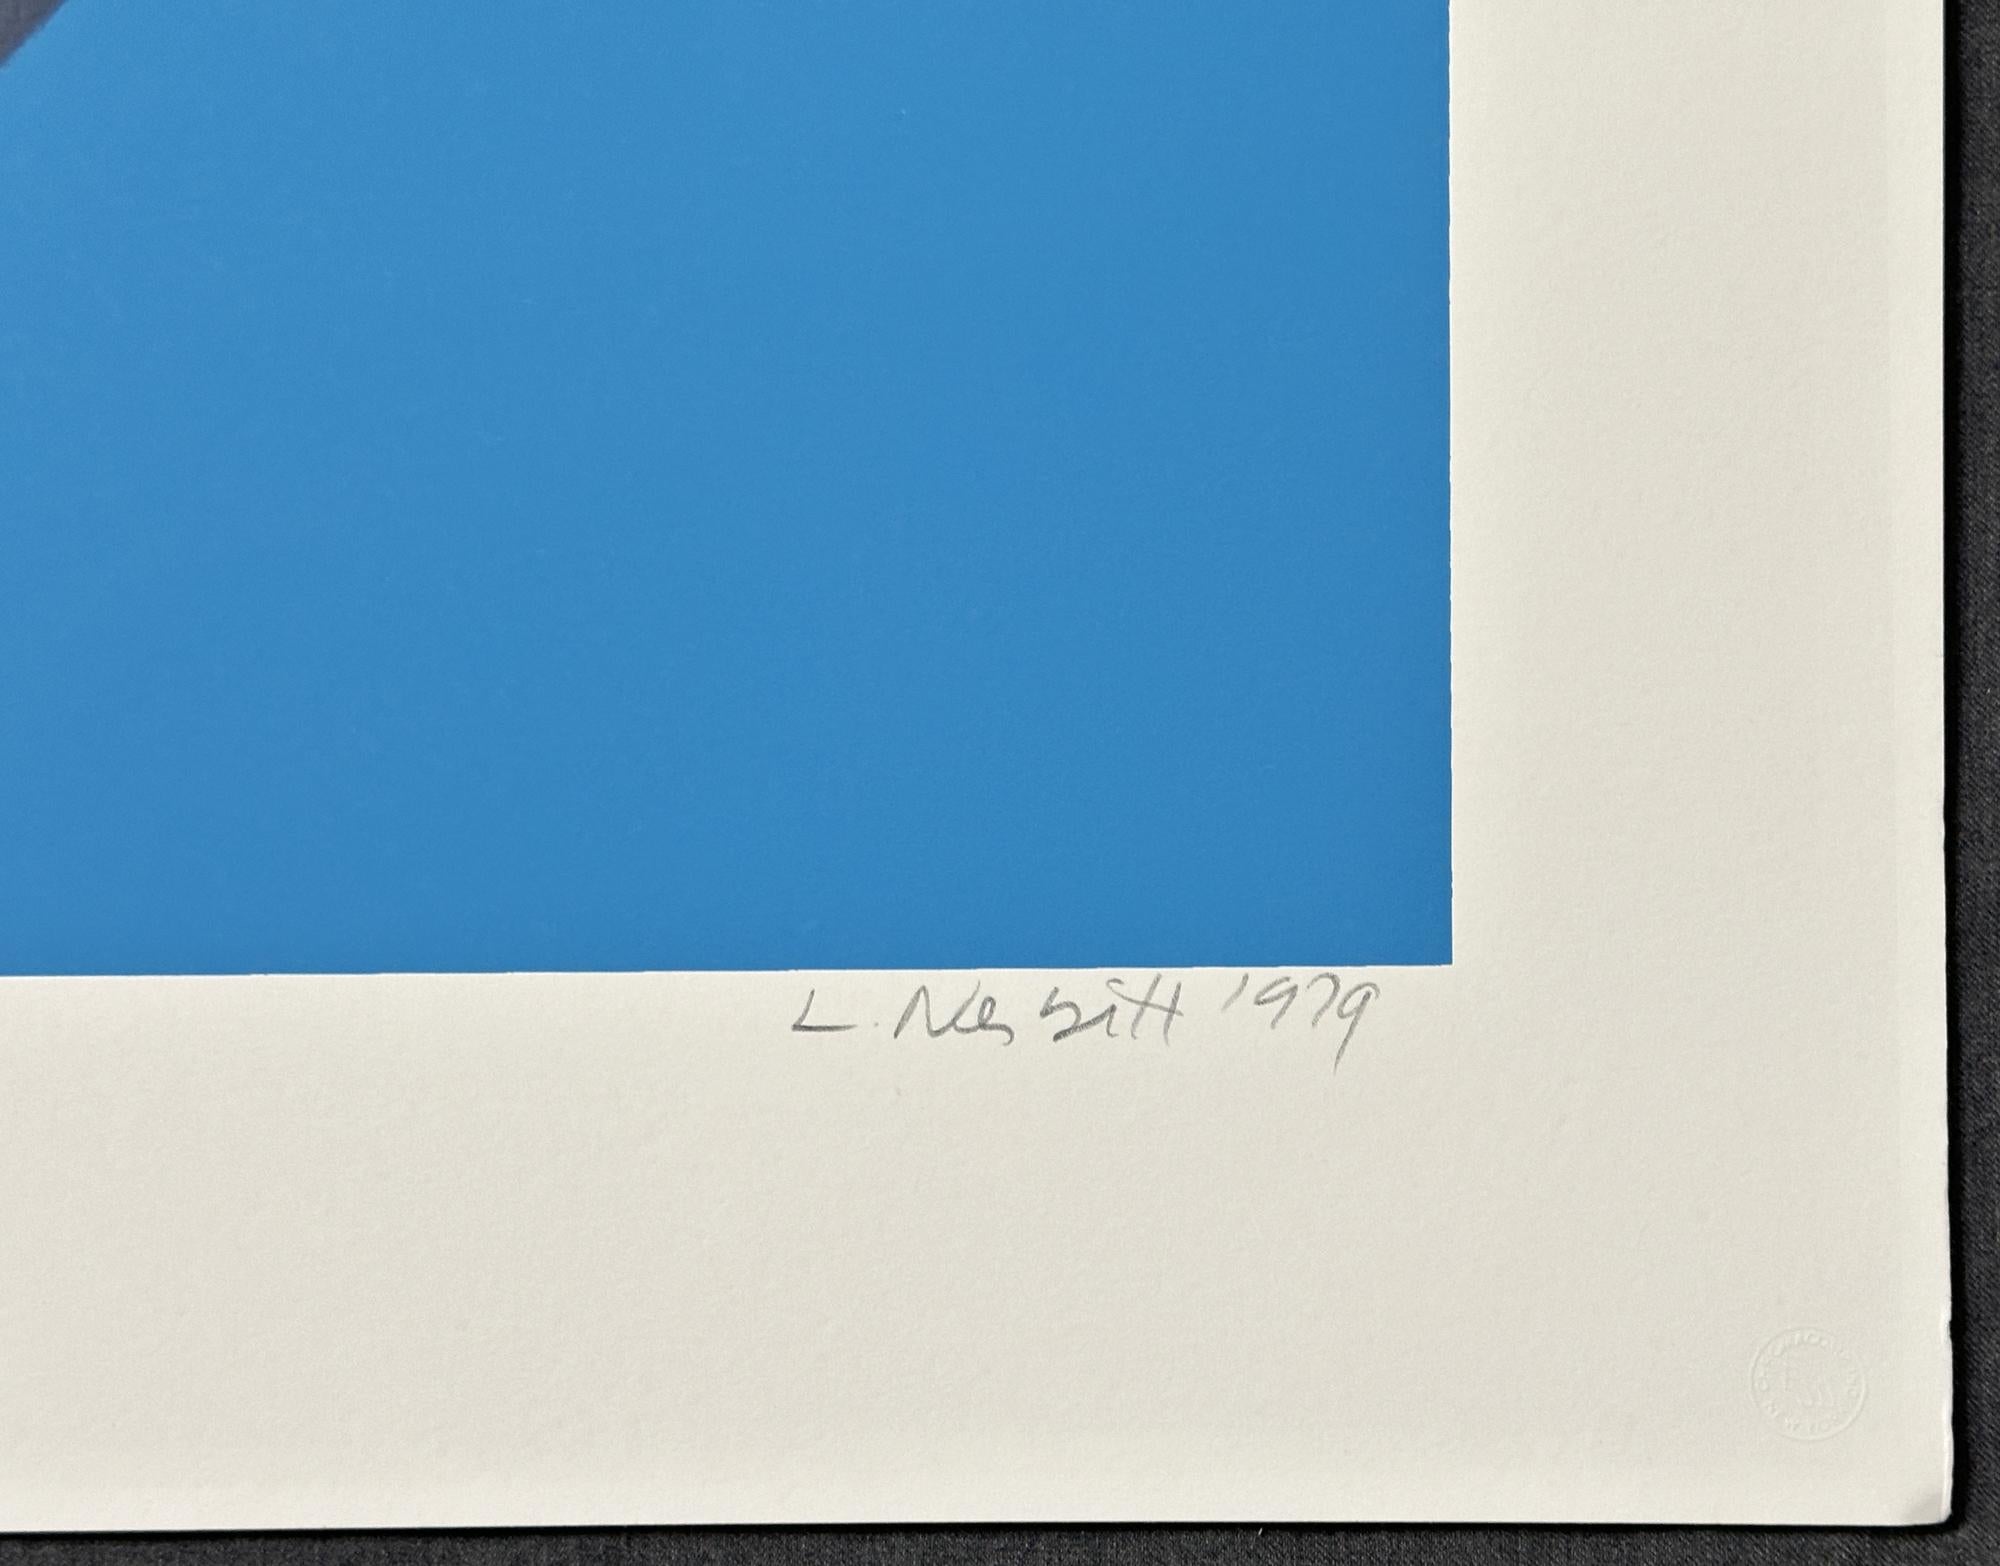 Nom de l'artiste : Lowell Nesbitt
Année : 1979
Type de support : Sérigraphie, sur papier Arches arches incheschival  
Taille-Largeur  Taille-Hauteur : 24'' x 31½